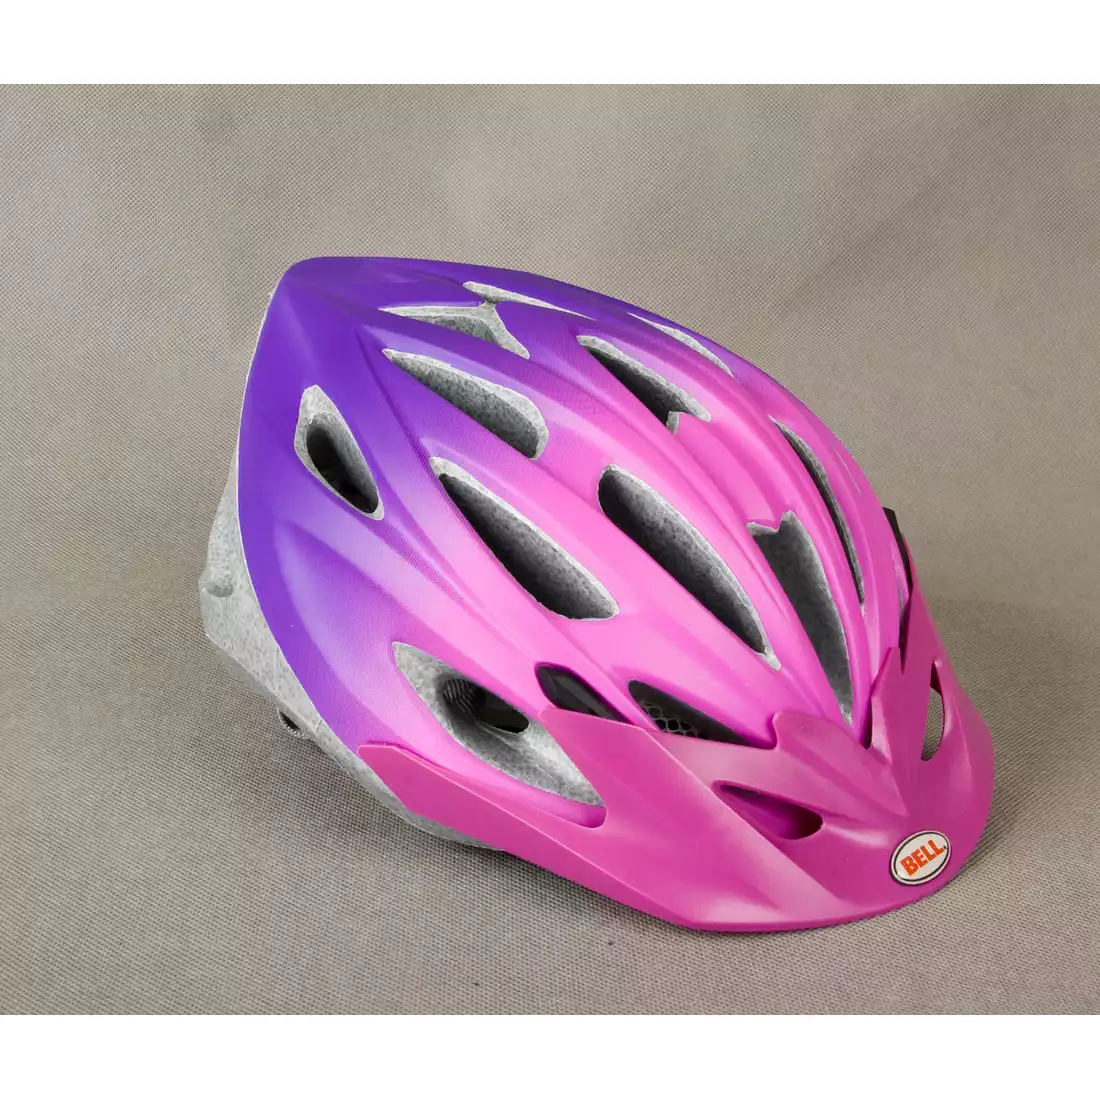 BELL SOLARA - damski kask rowerowy, różowo-fioletowy